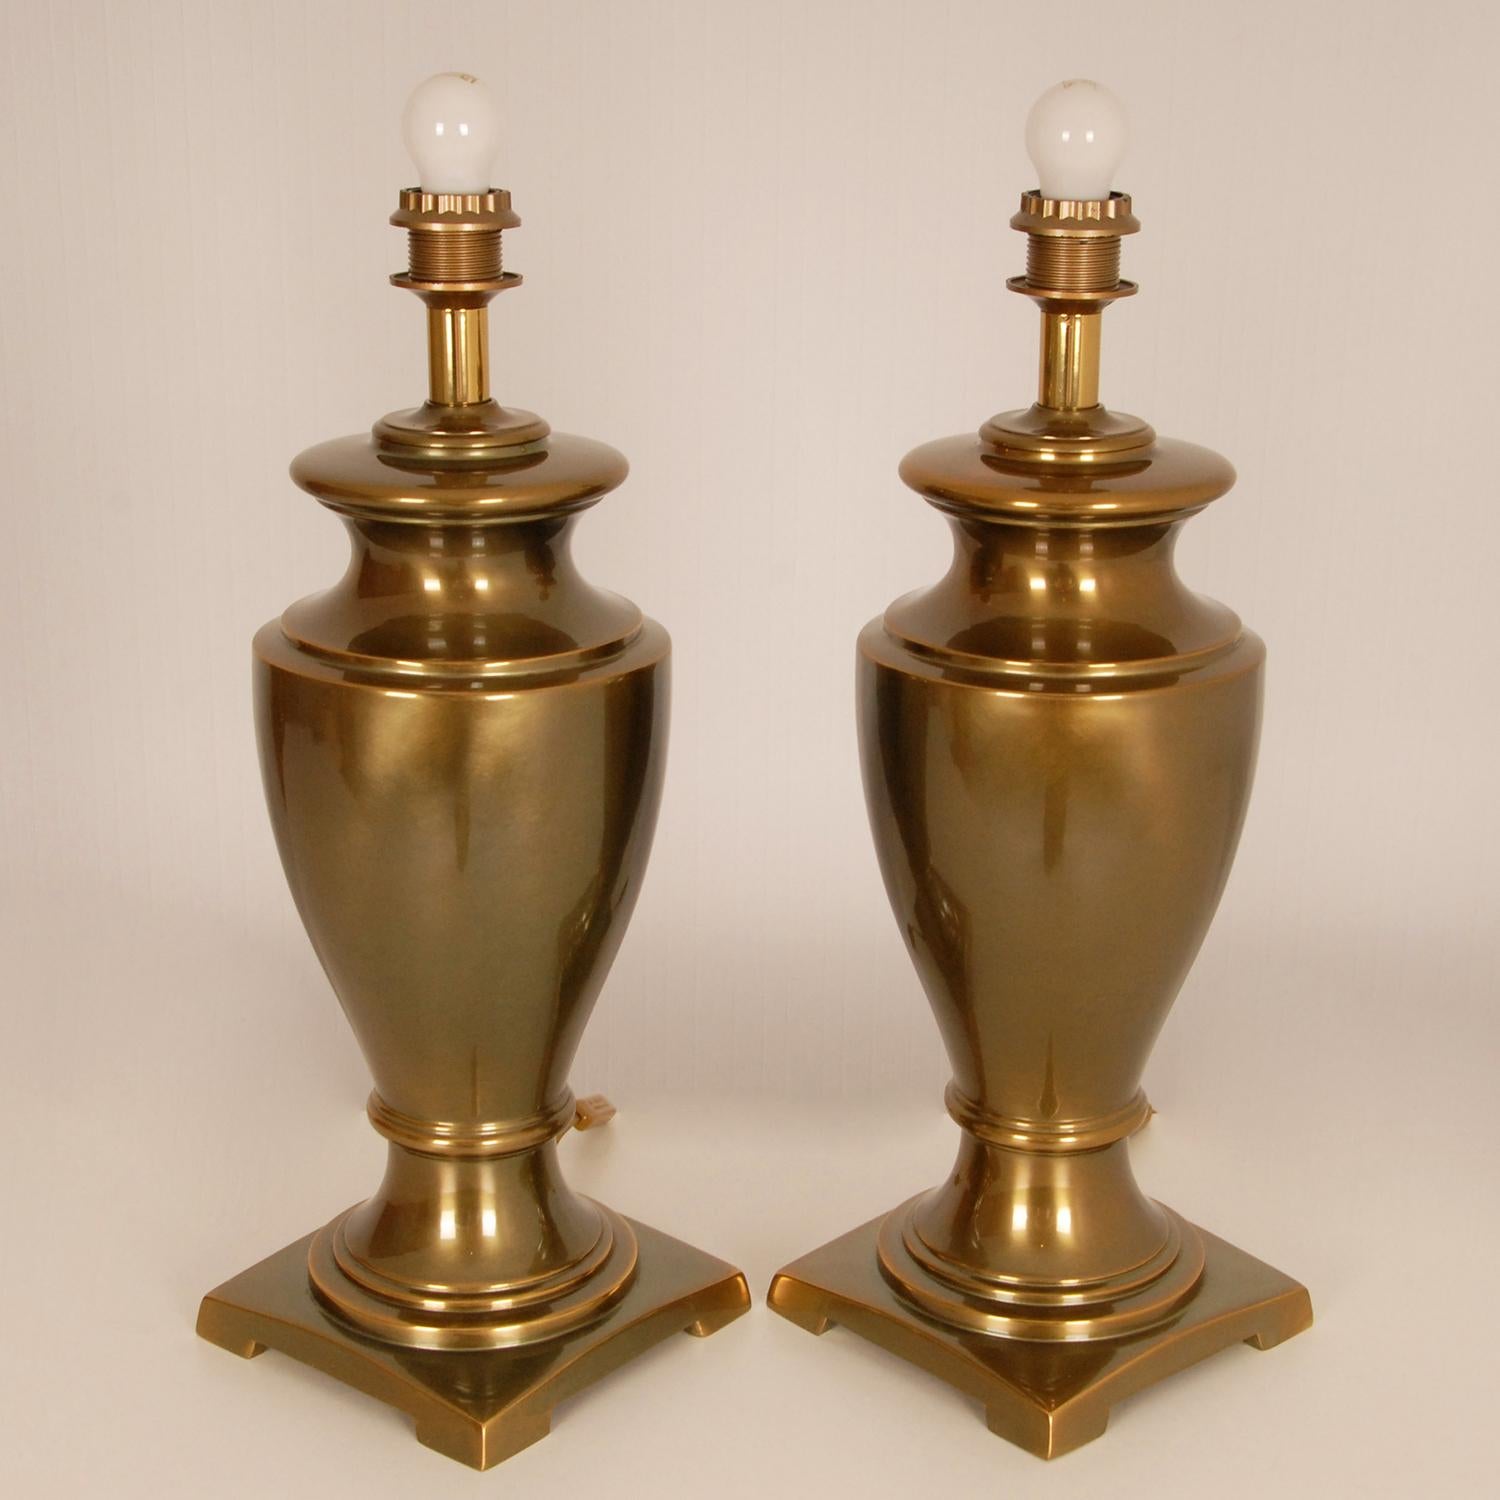 Lampes de table vintage de luxe en laiton doré - lampes vases.
Les vases de haute qualité sont fabriqués en laiton moulé et reposent sur un vase carré.
Origine Europe France 1970 - 1979
Style néoclassique
Les lampes sont en bon état de